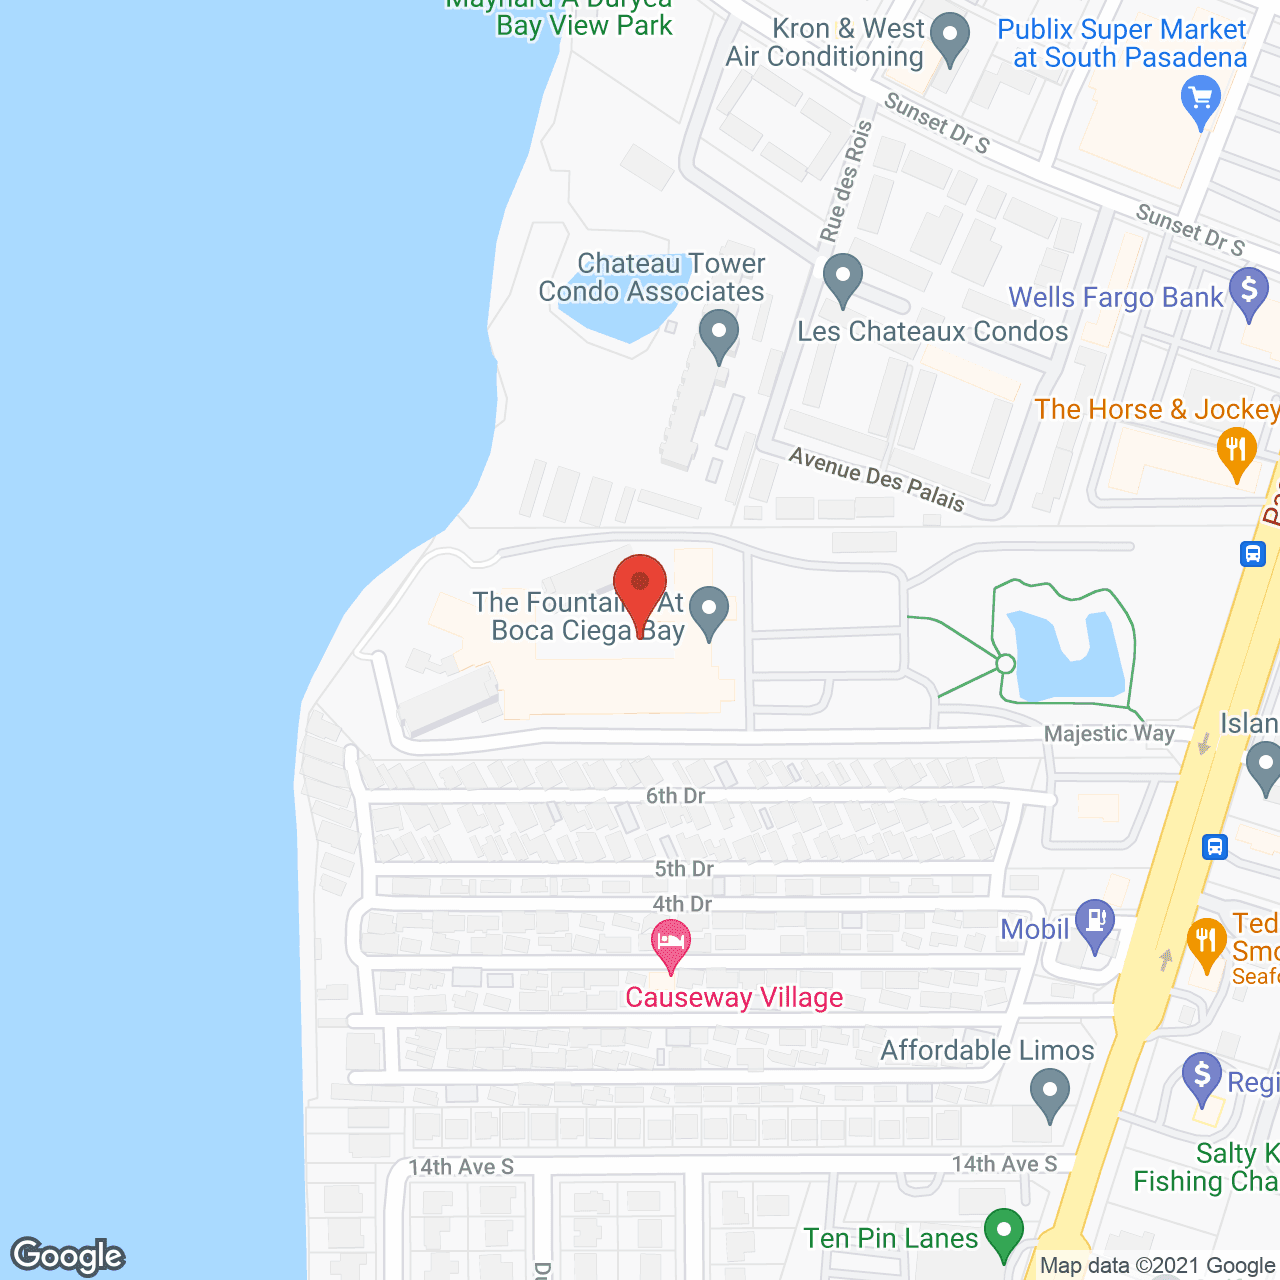 Elance at Pasadena in google map